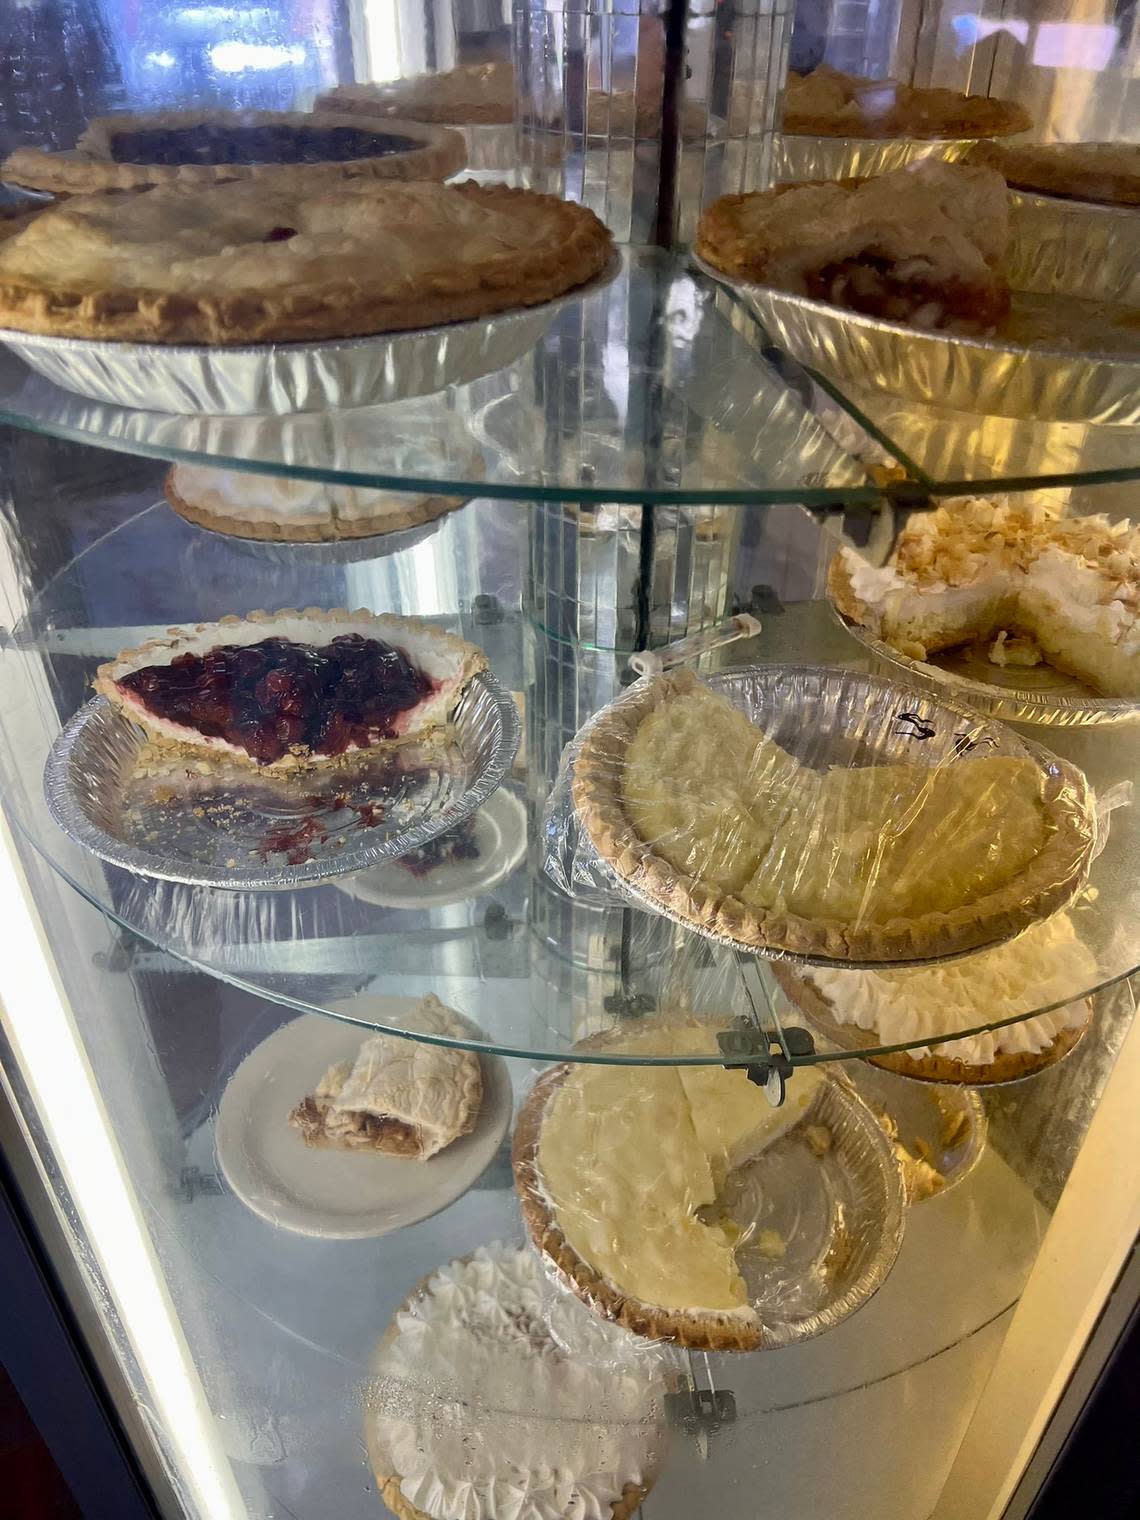 The pie case at Joe’s Coffee Shop in Watauga.